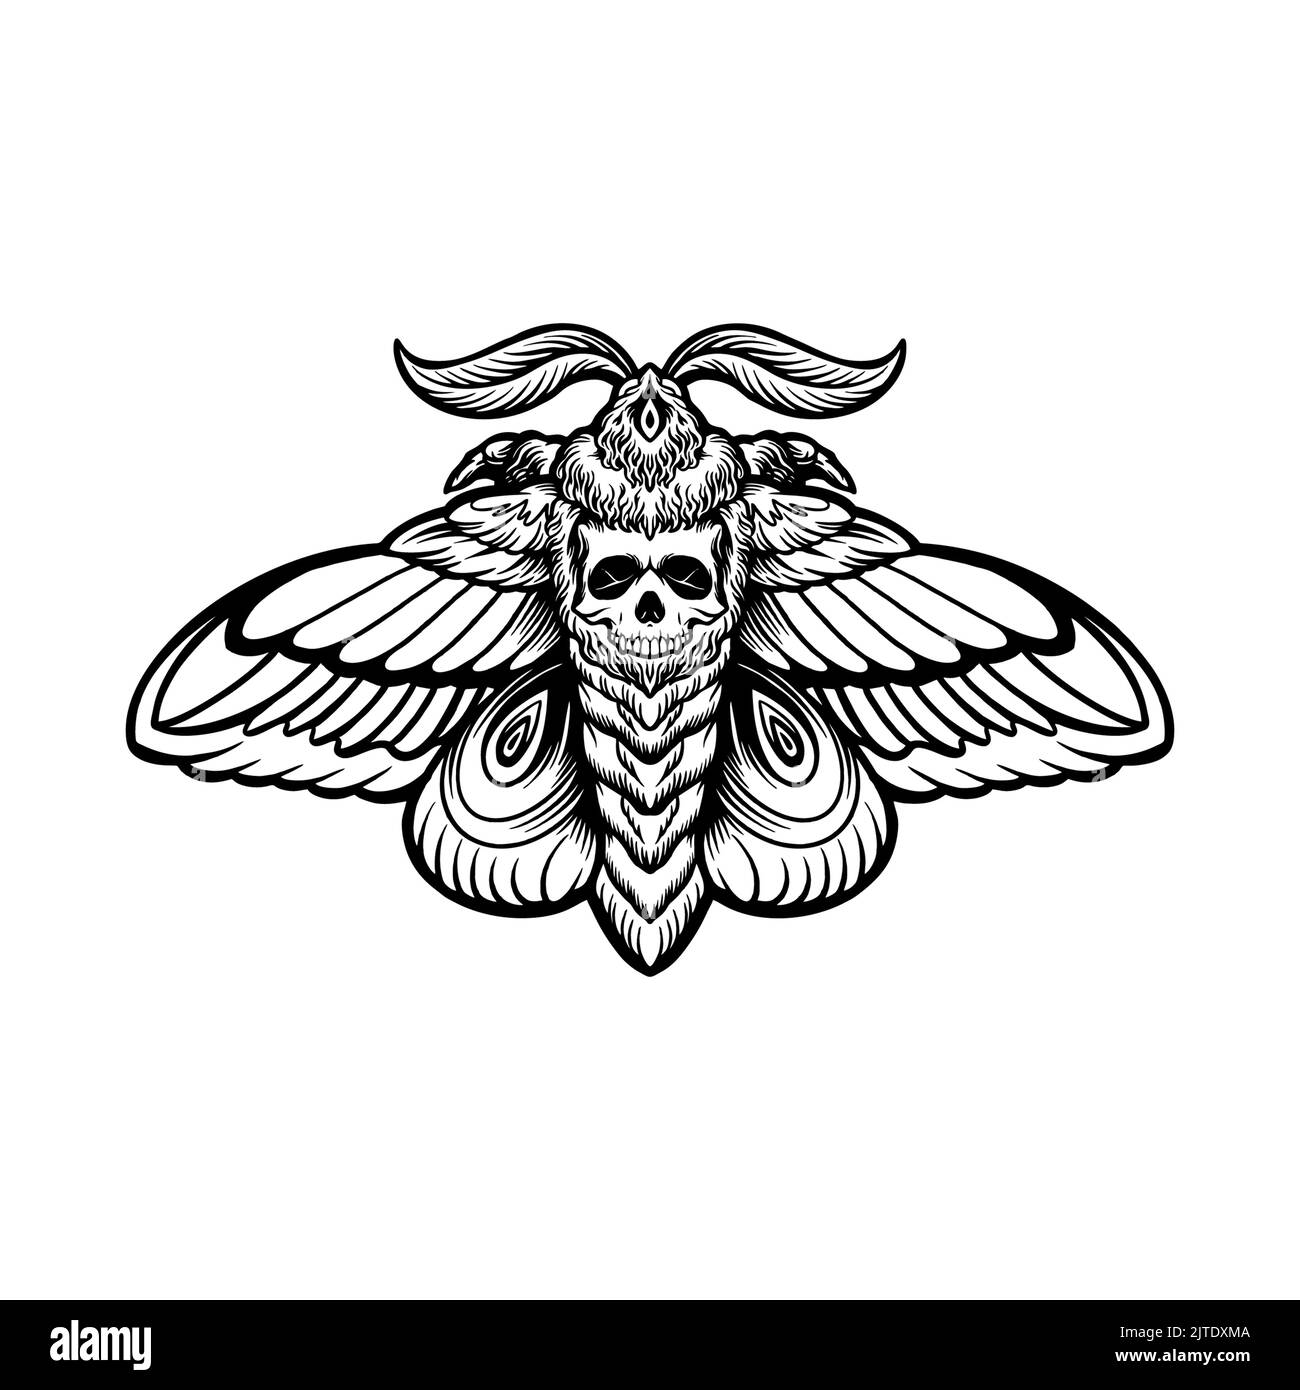 Papillon Moth crâne Tattoo Silhouette illustrations vectorielles pour votre travail logo, t-shirt de marchandise de mascotte, autocollants et étiquettes, affiche, greeti Banque D'Images